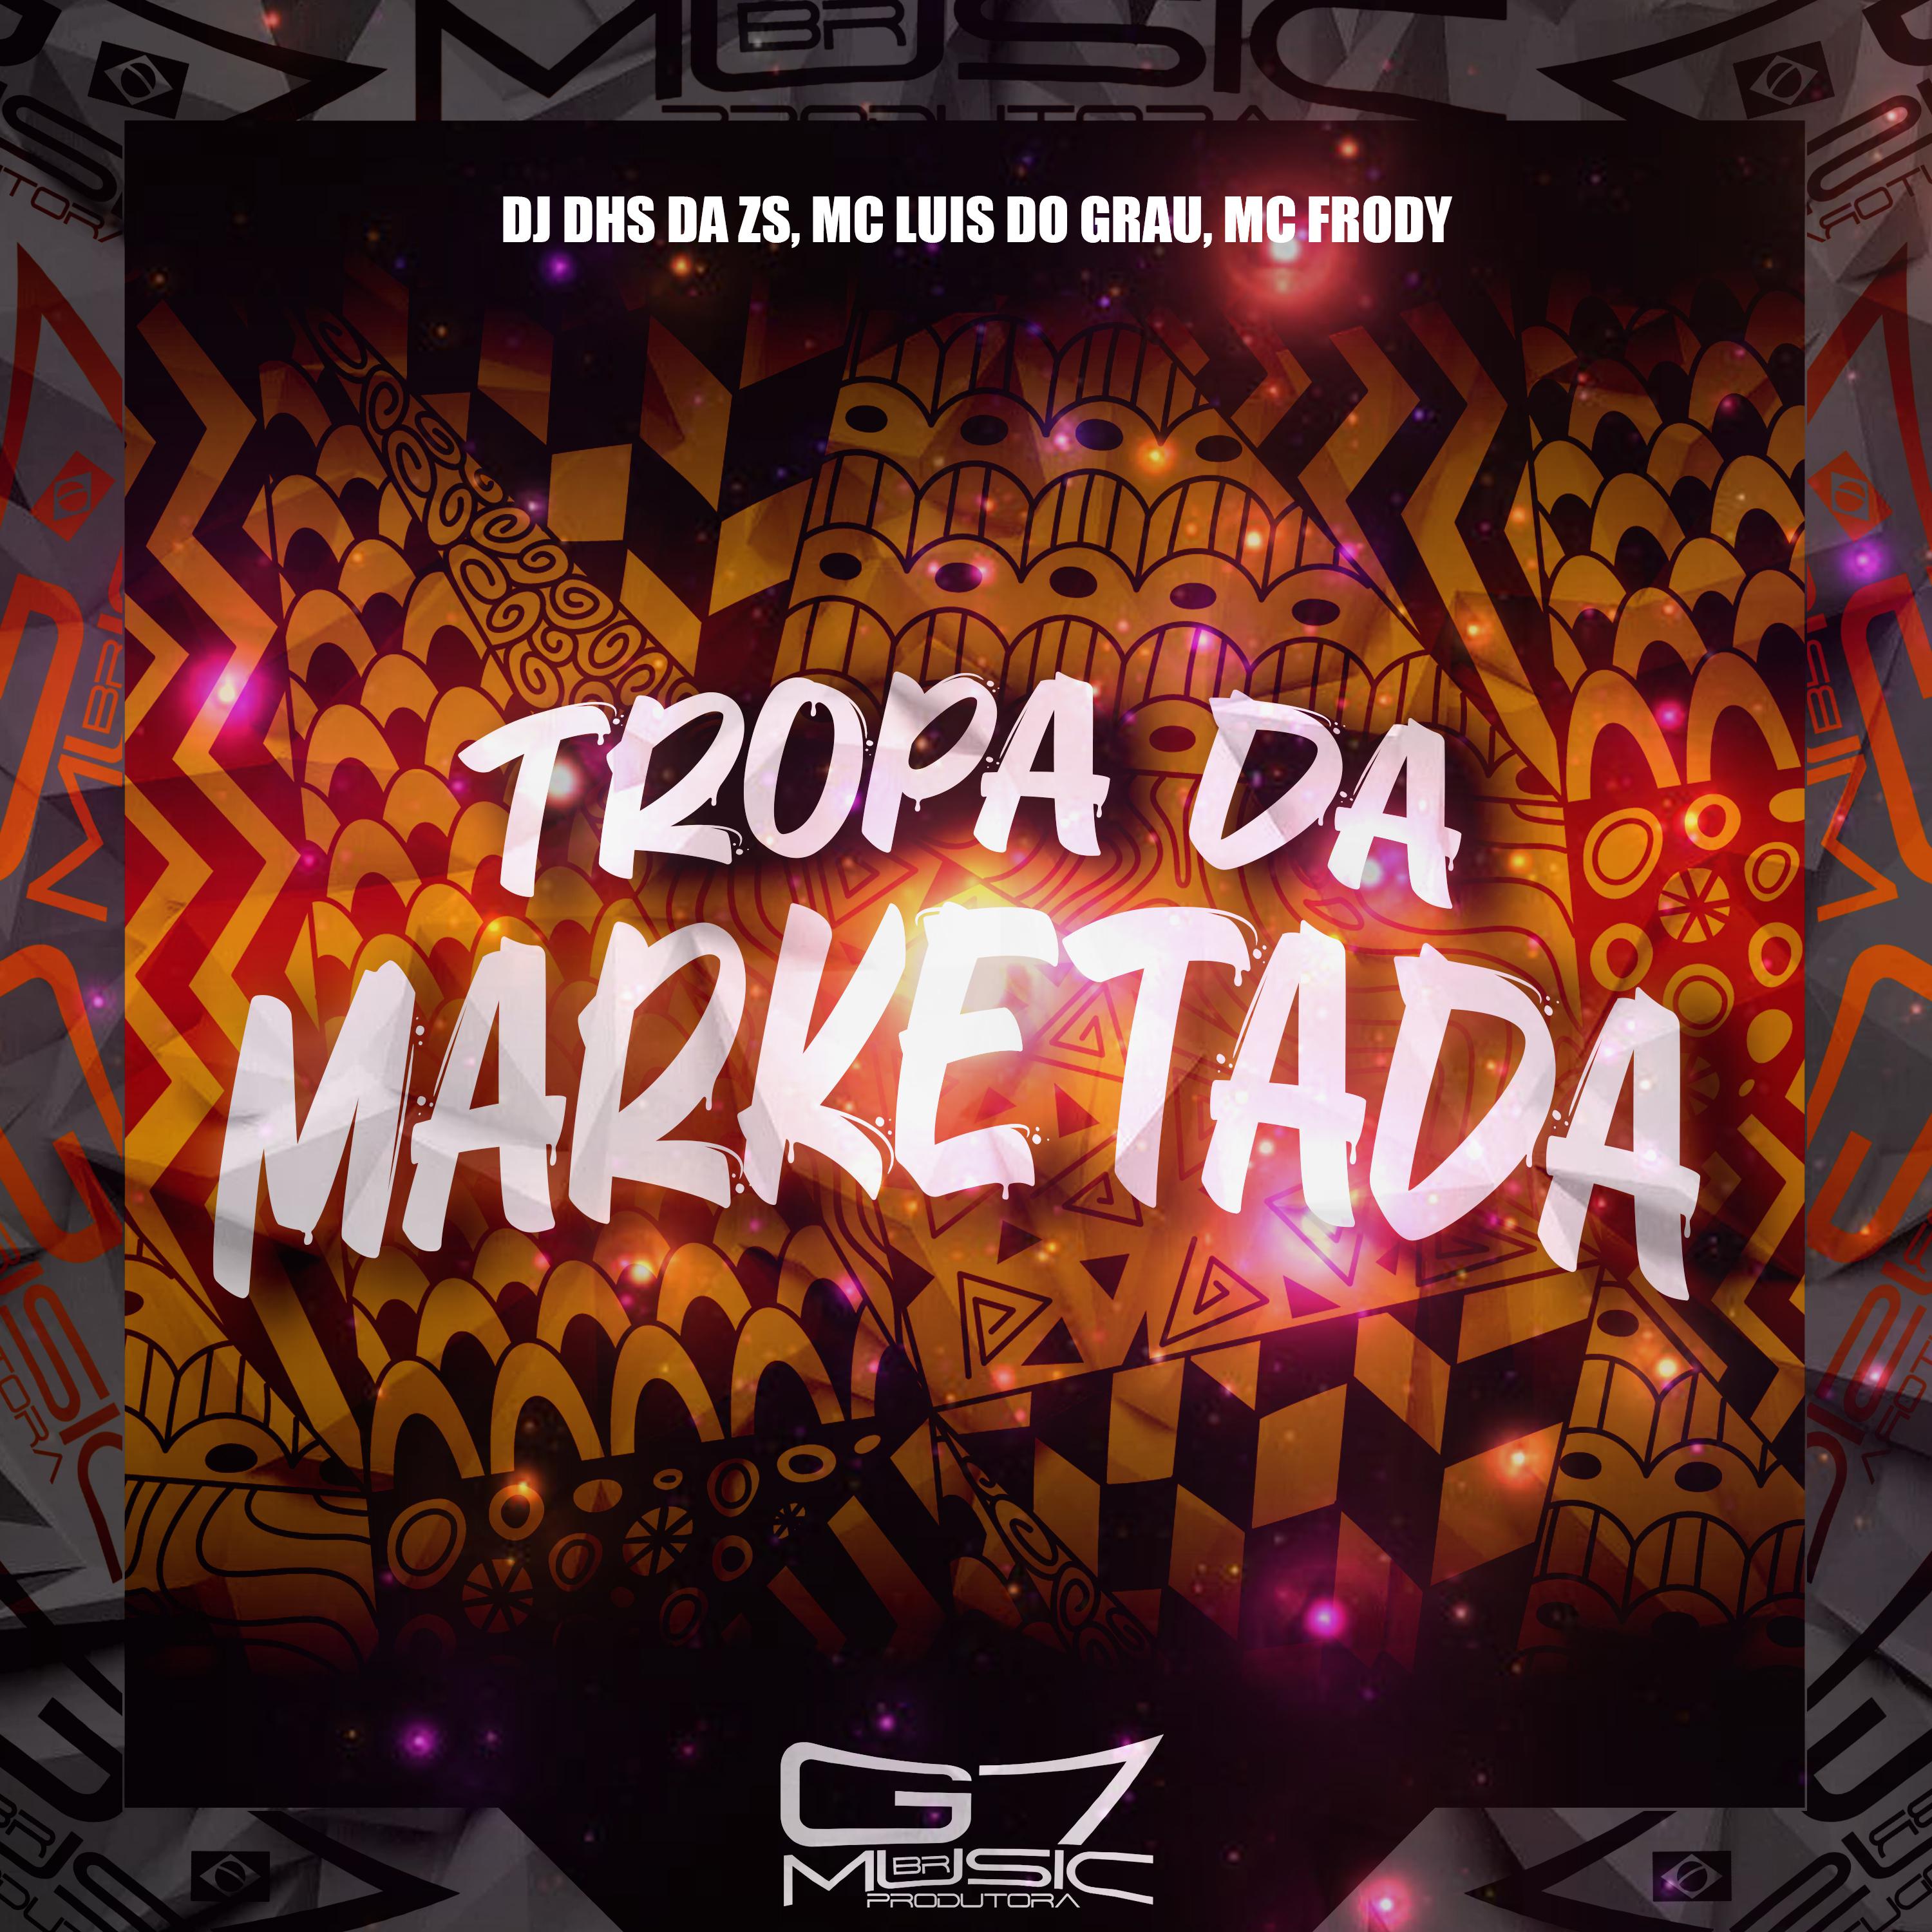 Постер альбома Tropa da Marketada